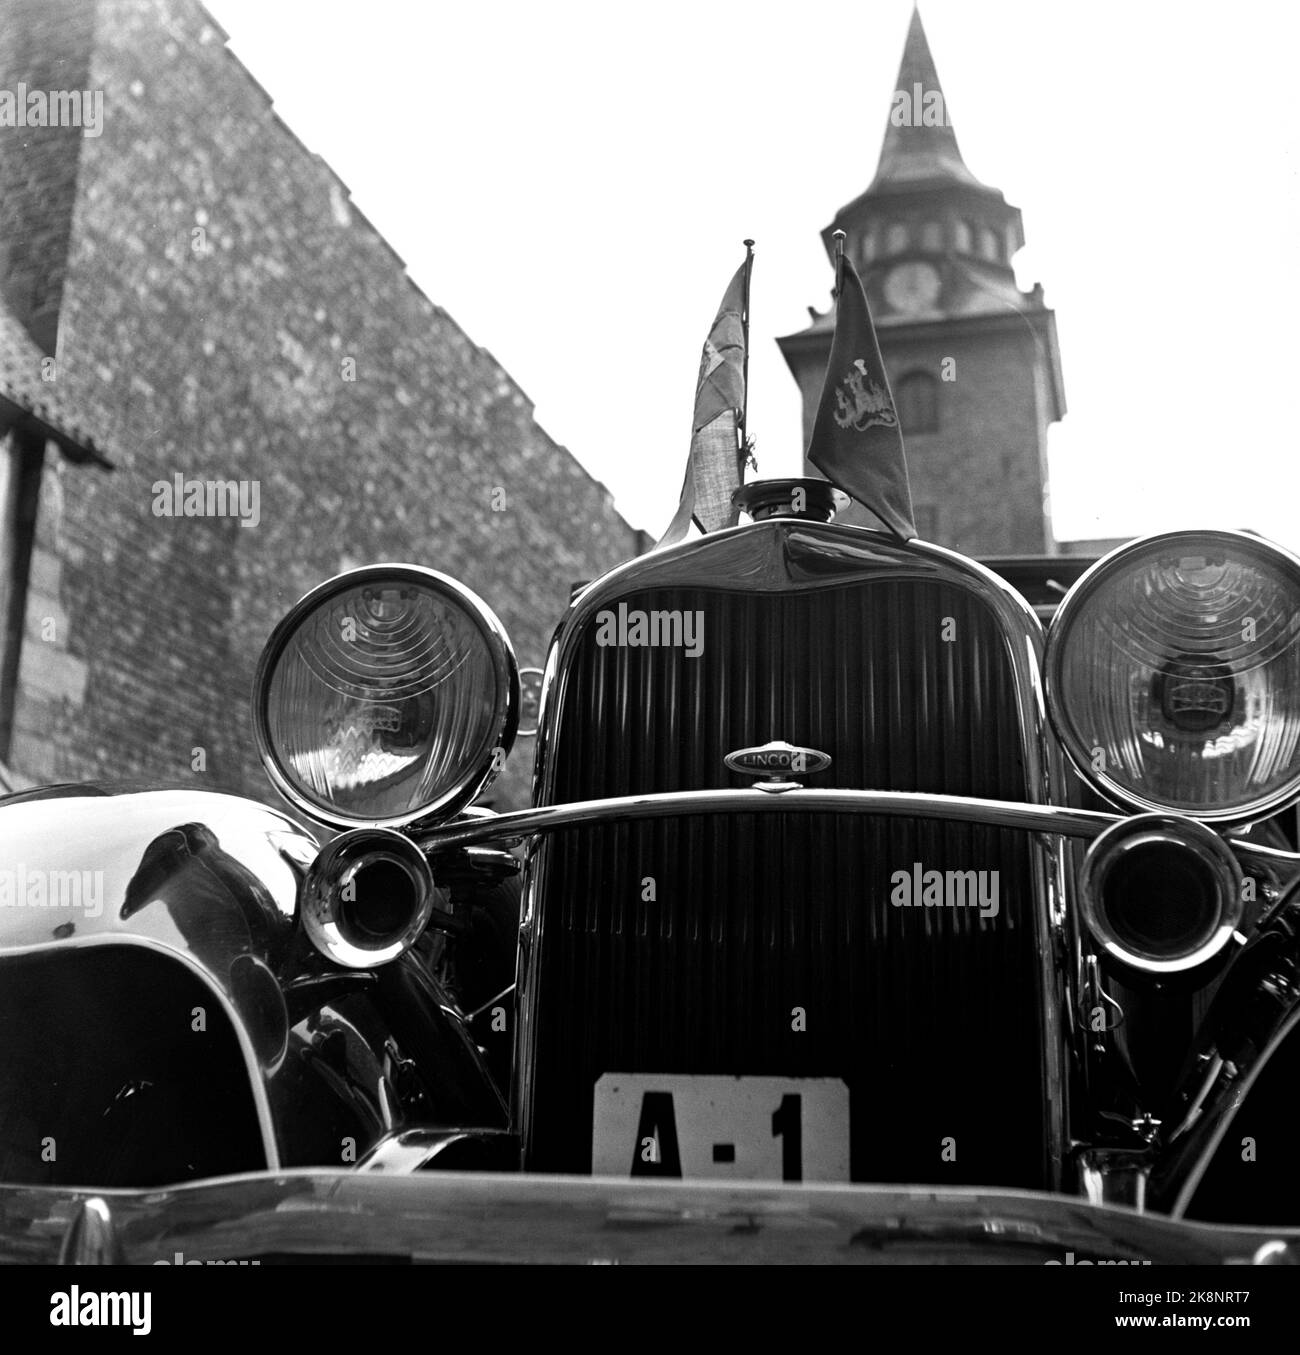 Oslo 1952. König Gustaf Adolf und Königin Louise aus Schweden werden offiziell in Norwegen besucht. Das königliche Auto A1 fotografiert außerhalb des Schlosses Akershus während der Tour. Foto: Sverre A. Børretzen / Aktuell / NTB Stockfoto